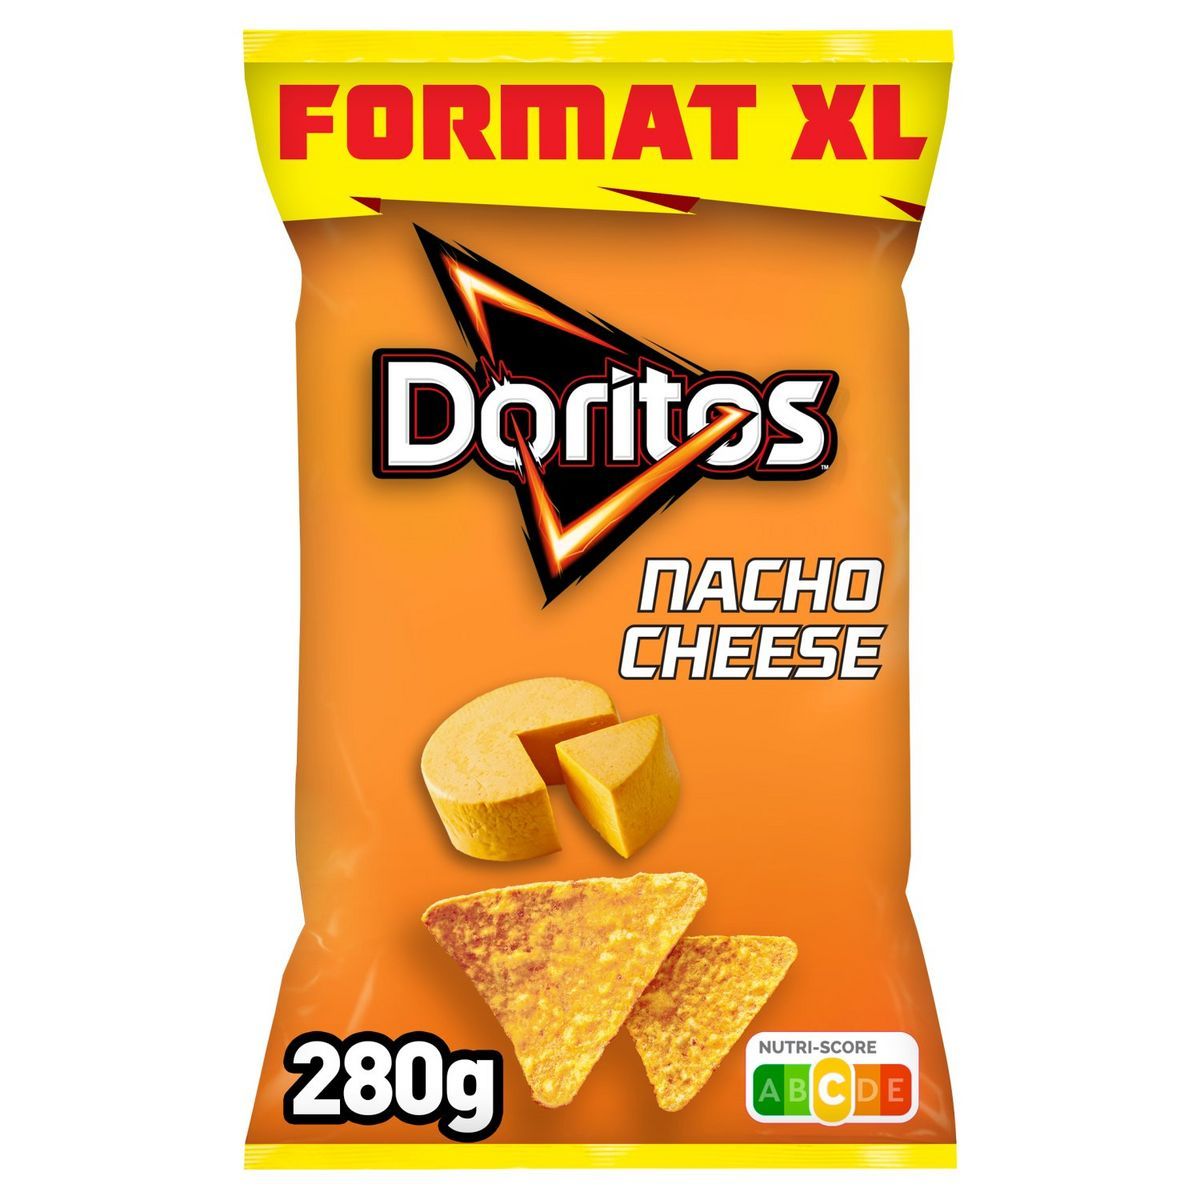 TORTILLA NACHO CHEESE FORMAT XL DORITOS